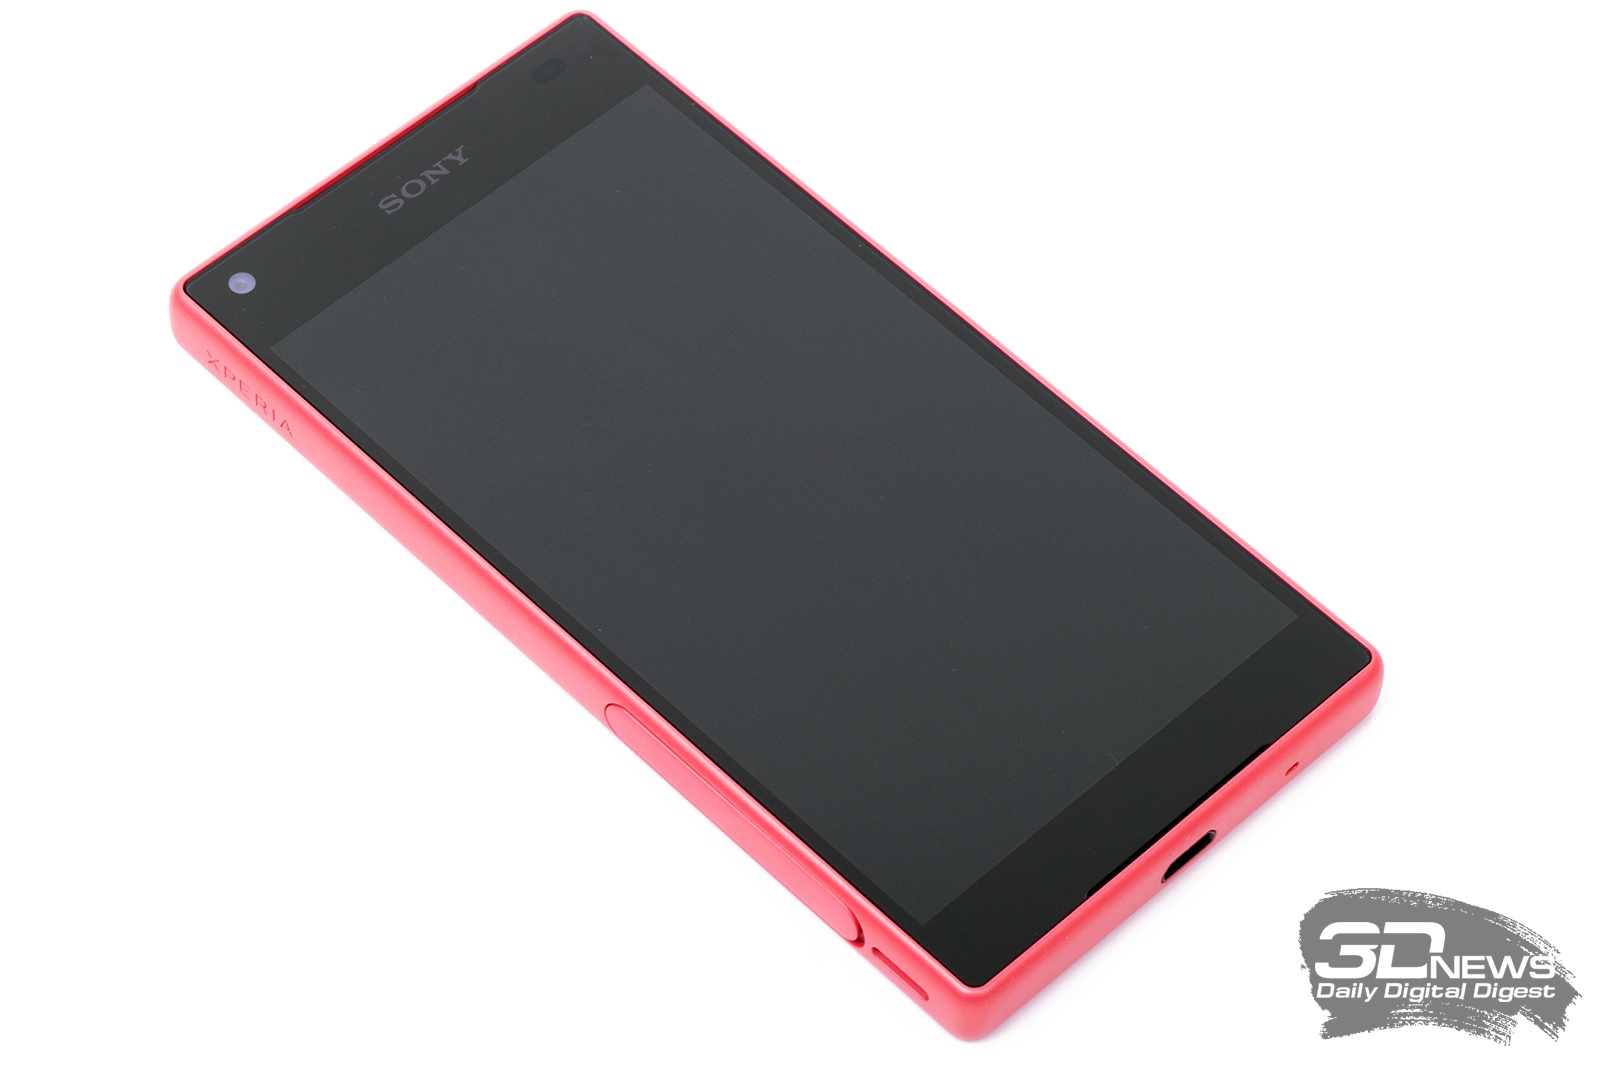 welzijn Aanval Meerdere Обзор смартфона Sony Xperia Z5 Compact: размер имеет значение / Смартфоны